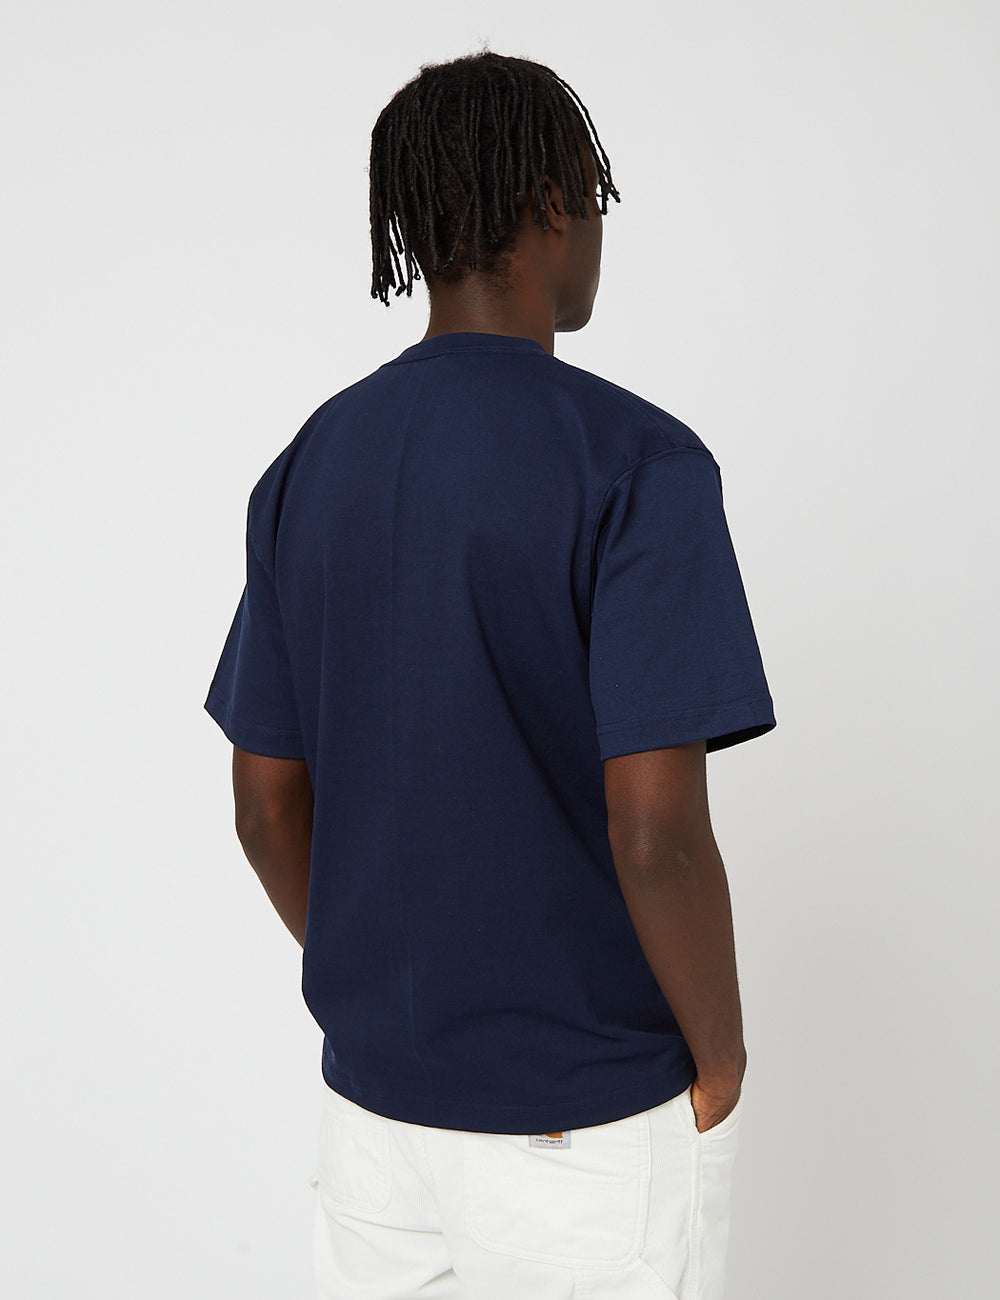 EXCESS (8oz I 302 URBAN Marineblau - Camber Pocket Cotton) USA T-Shirt